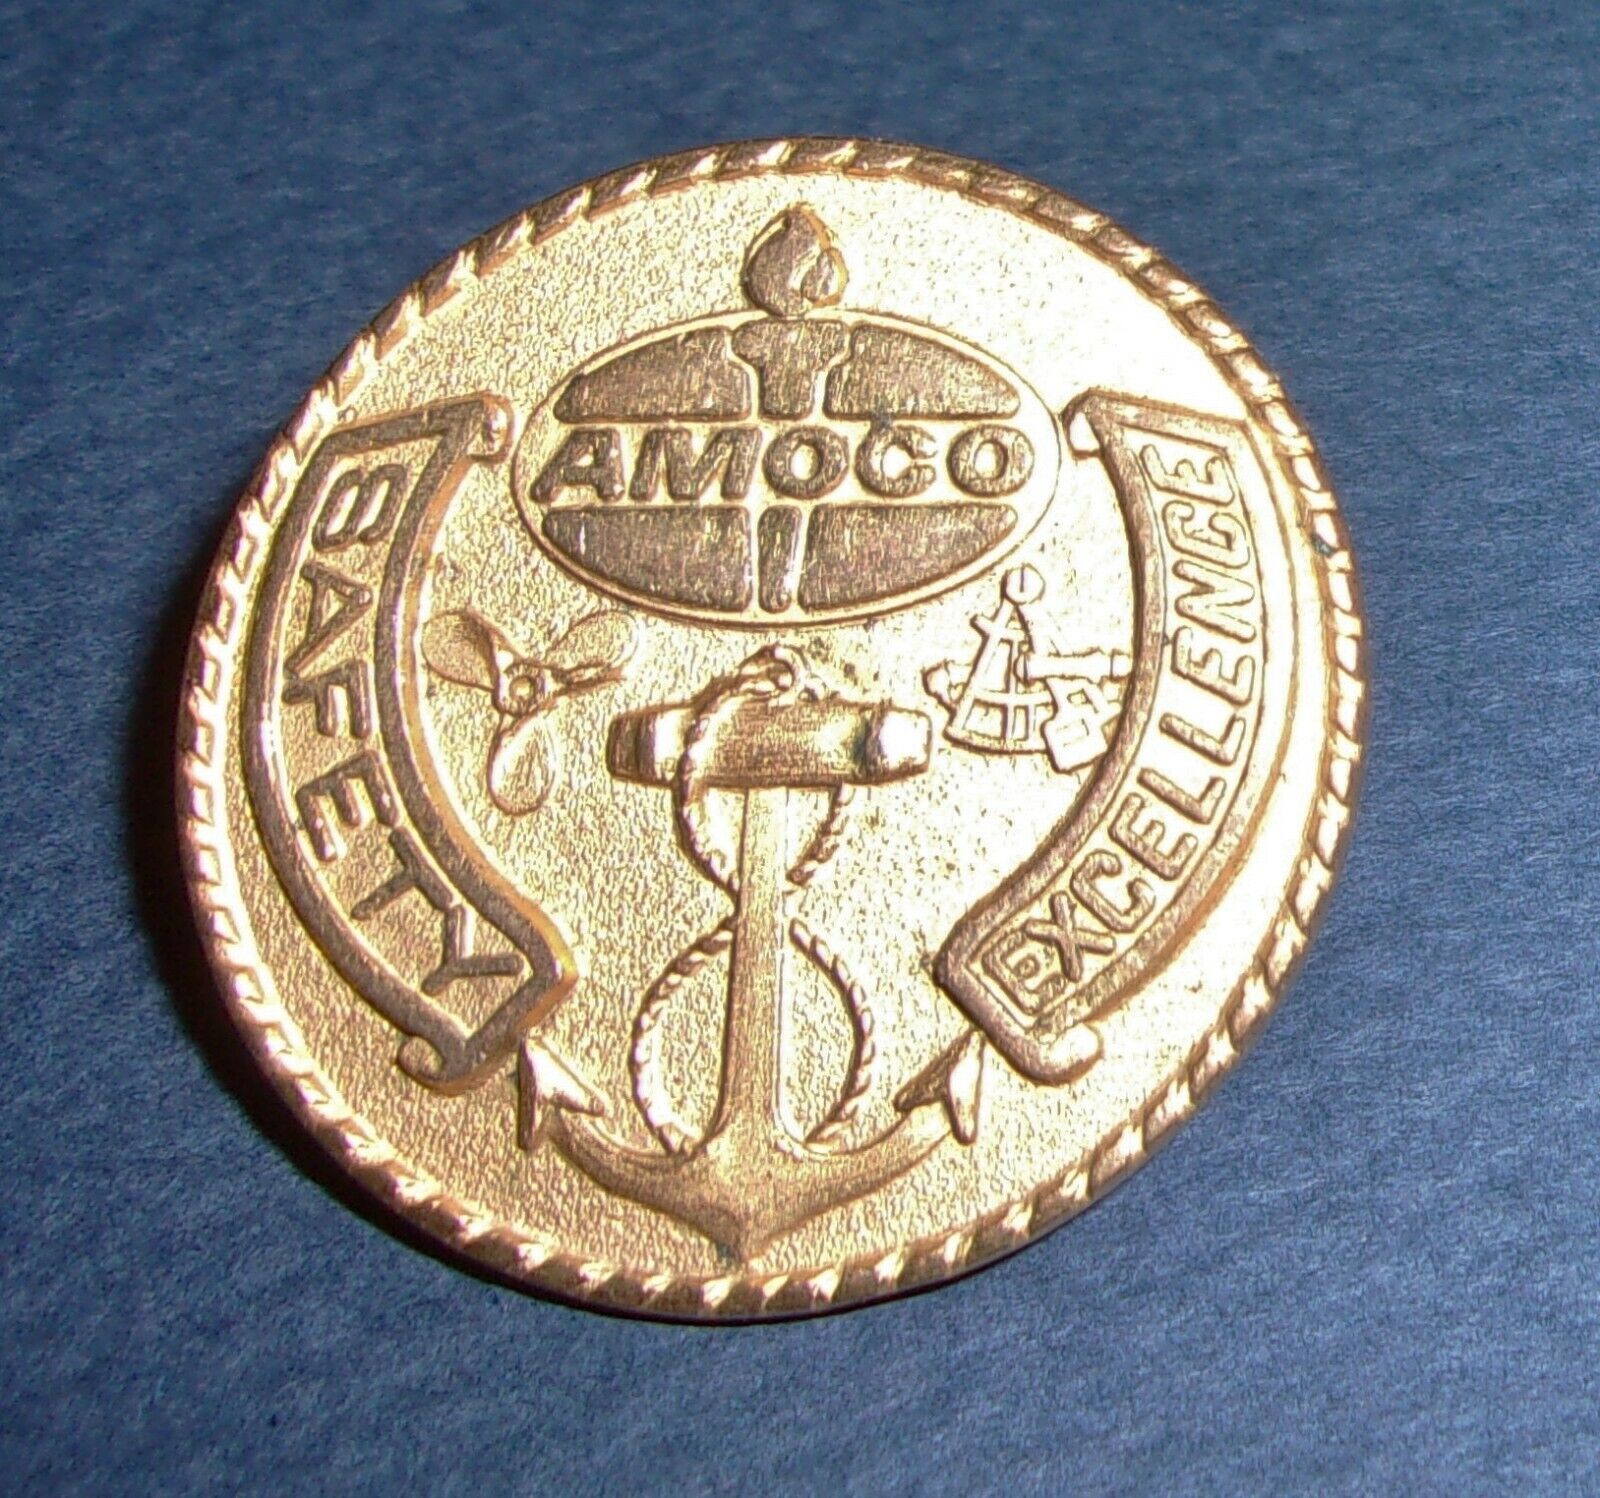 RARE Vintage Amoco Safety Excellence Award Coin 